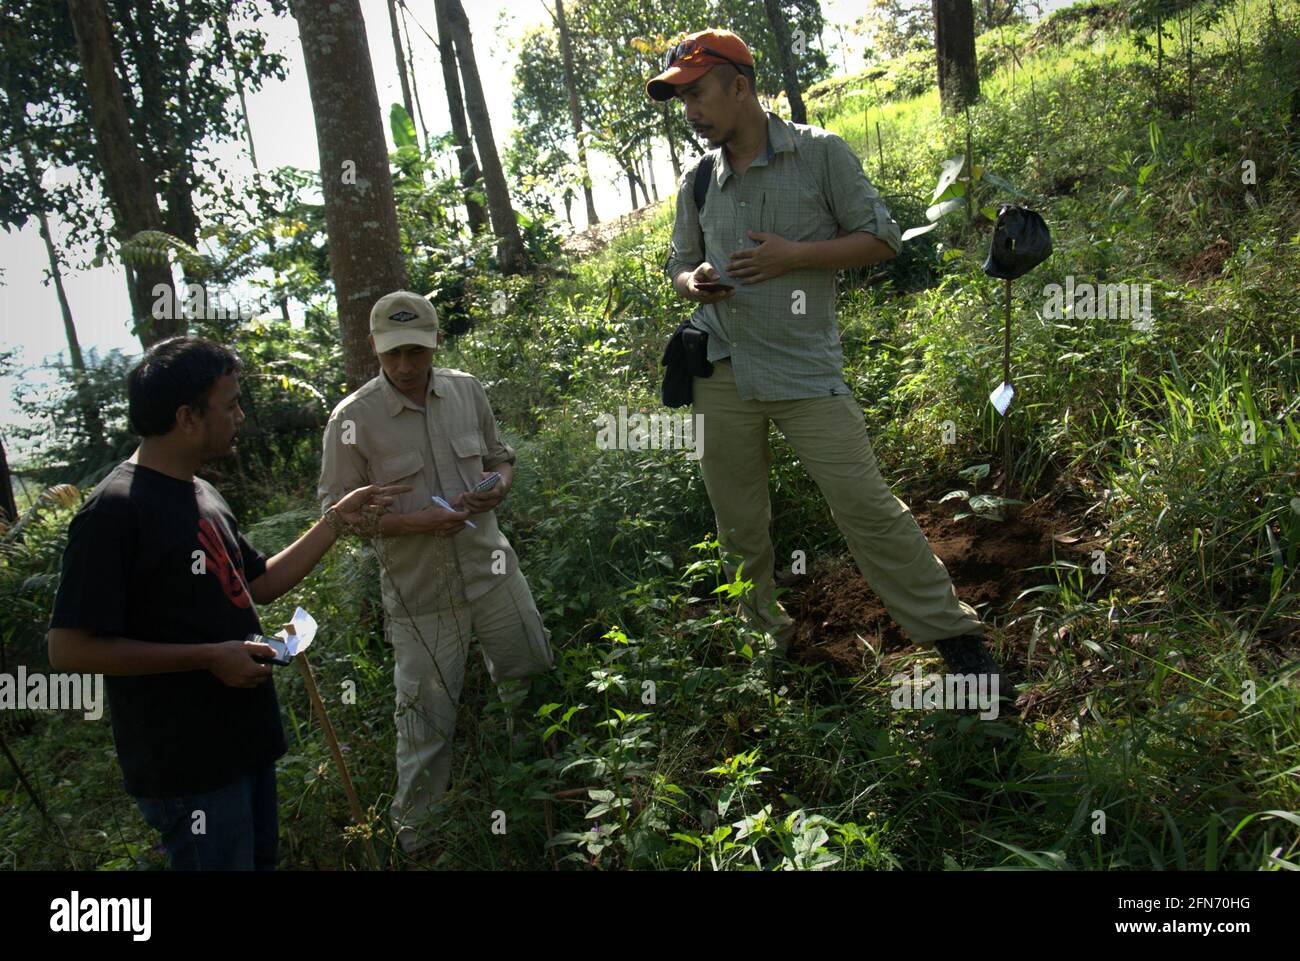 Los trabajadores del proyecto y un adoptante discuten notas sobre los árboles plantados recientemente por los adoptantes durante un programa de adopción de árboles en 2013, una parte del proyecto de reforestación en el Parque Nacional Mount Gede Pangrango, Java Occidental, Indonesia. Foto de stock